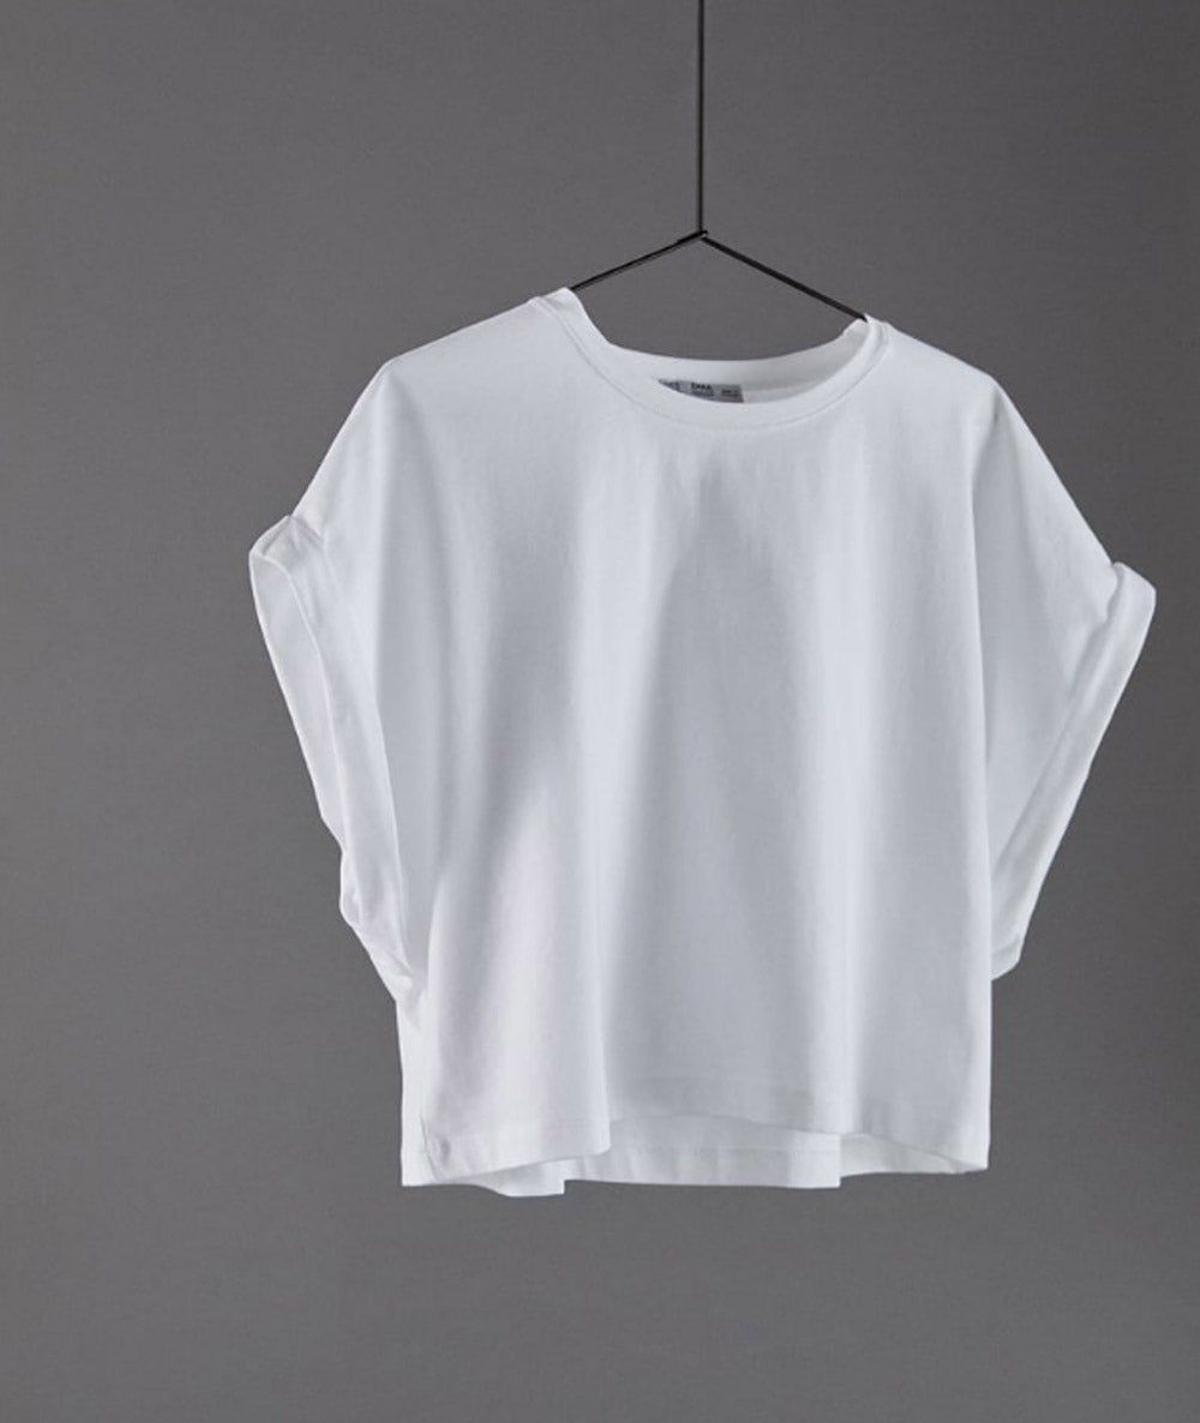 Camiseta blanca cropped de Zara. (Precio: 9, 95 euros)